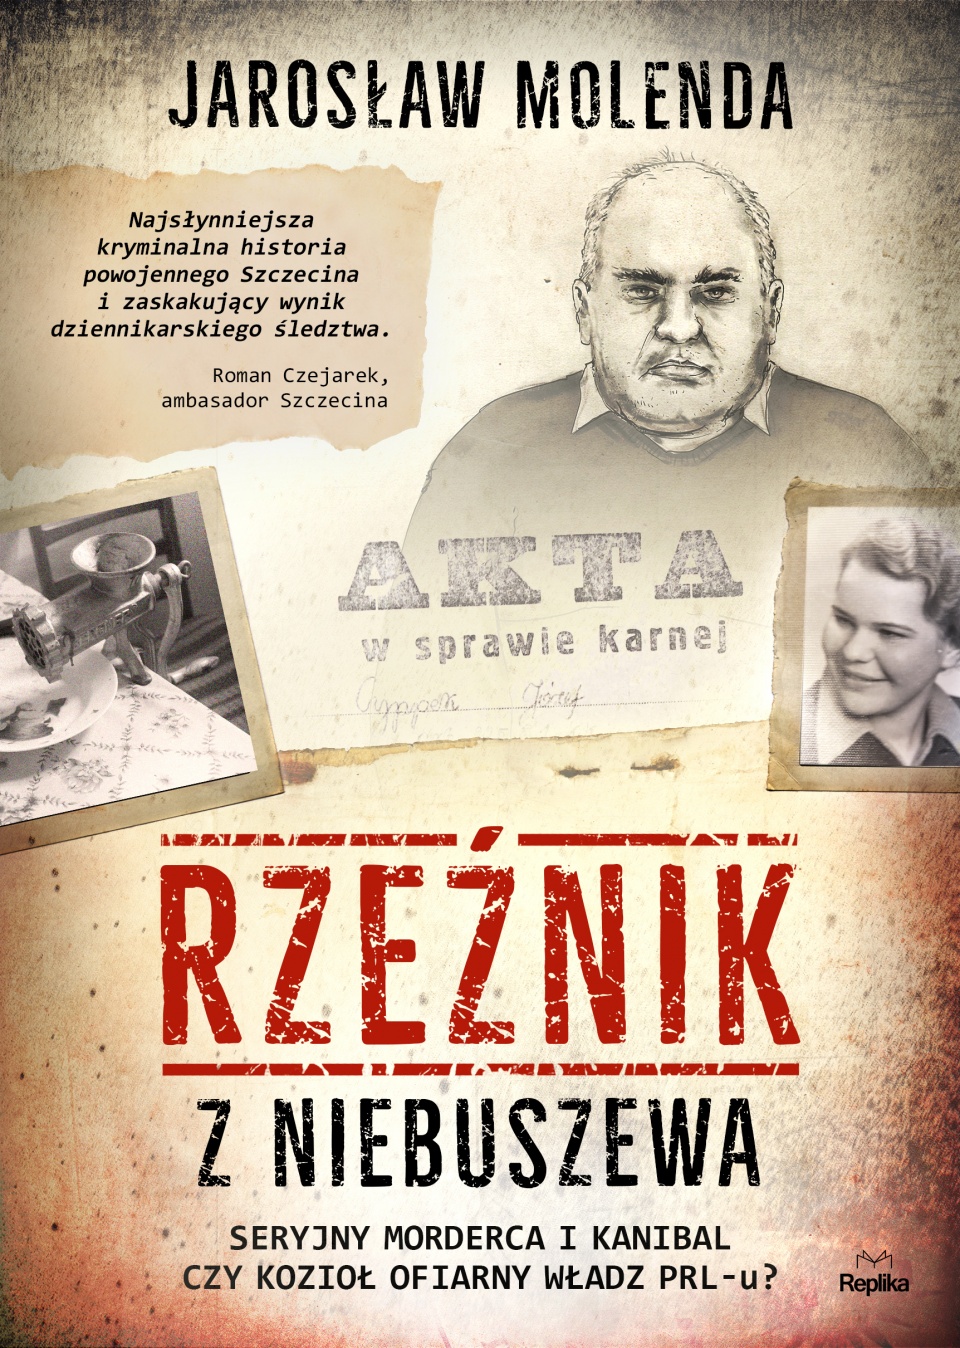 Okładka książki Jarosława Molendy "Rzeźnik z Niebuszewa". Fot. Mat. prasowe